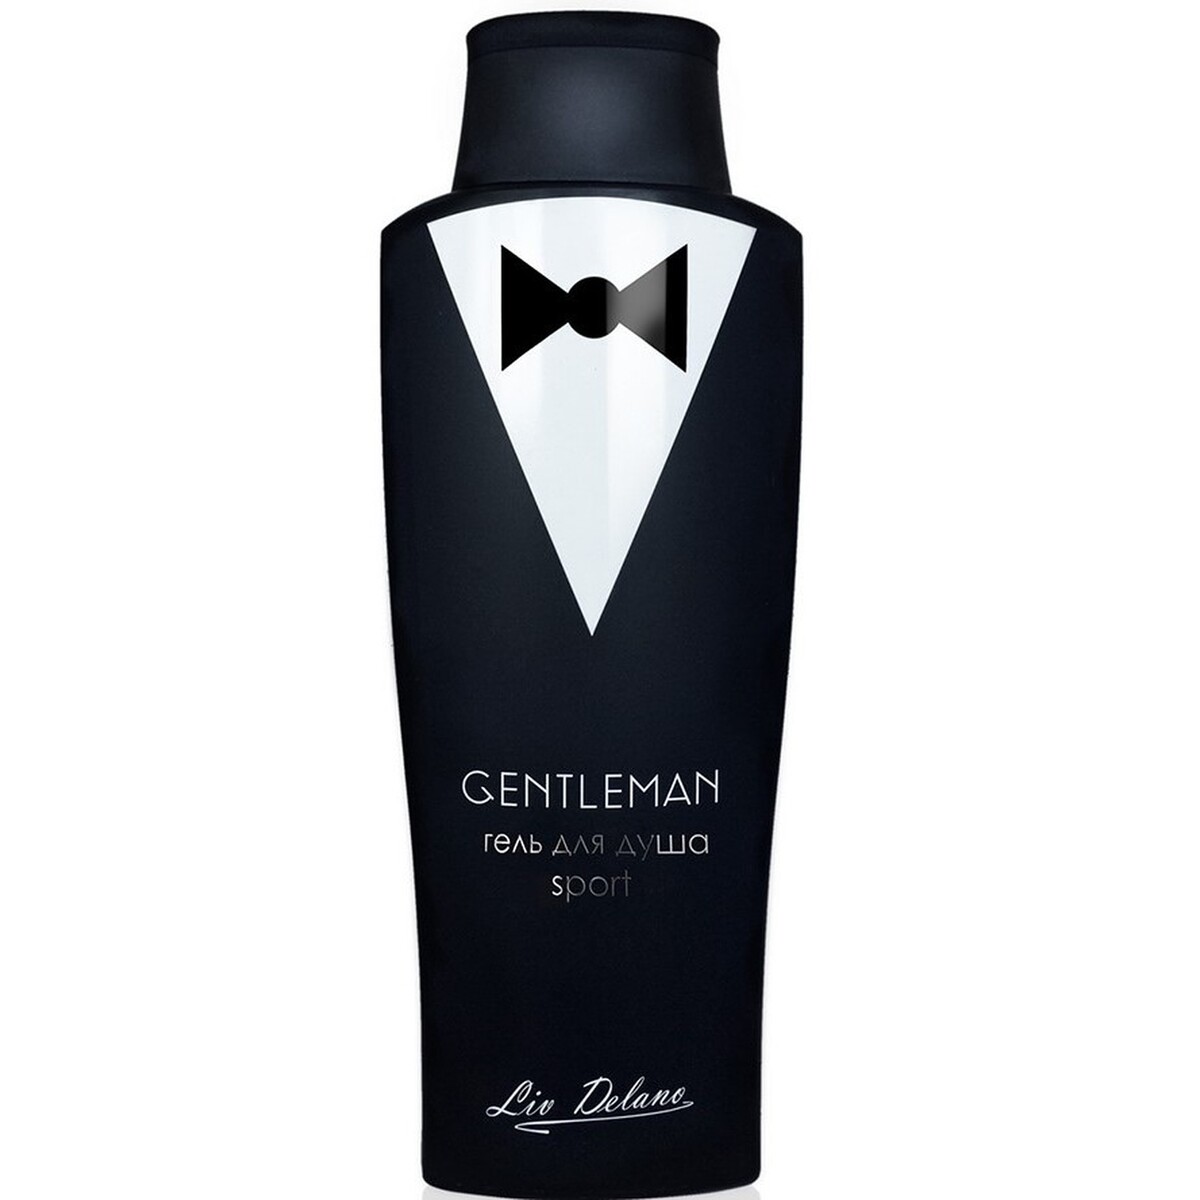    gentleman sport 300